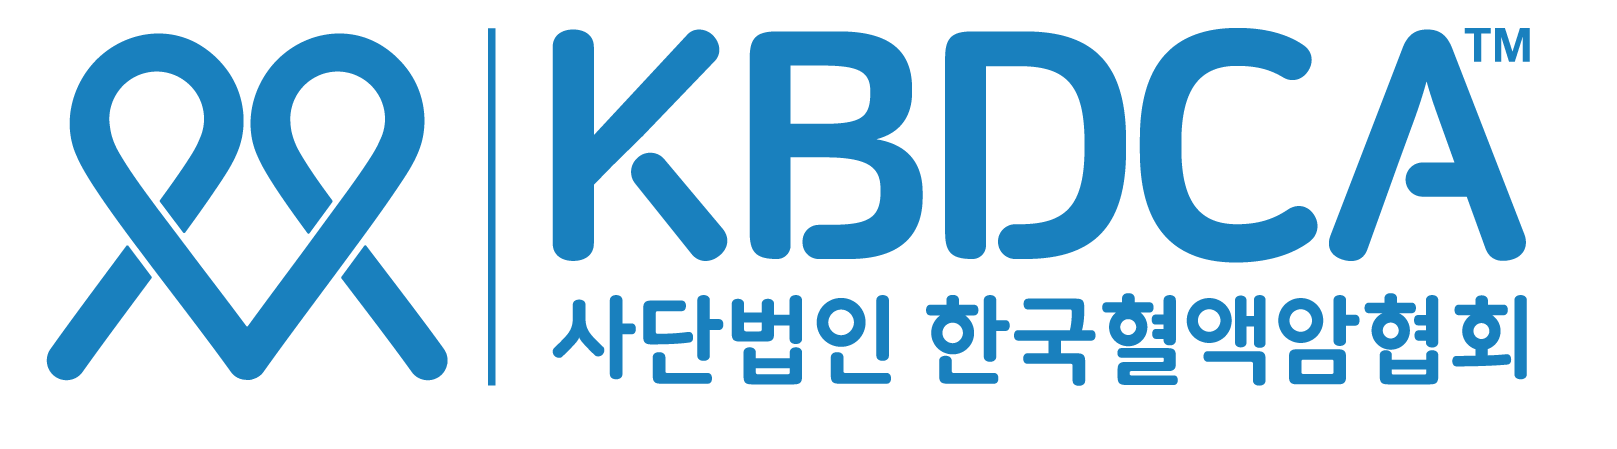 (사)한국혈액암협회의 기업로고